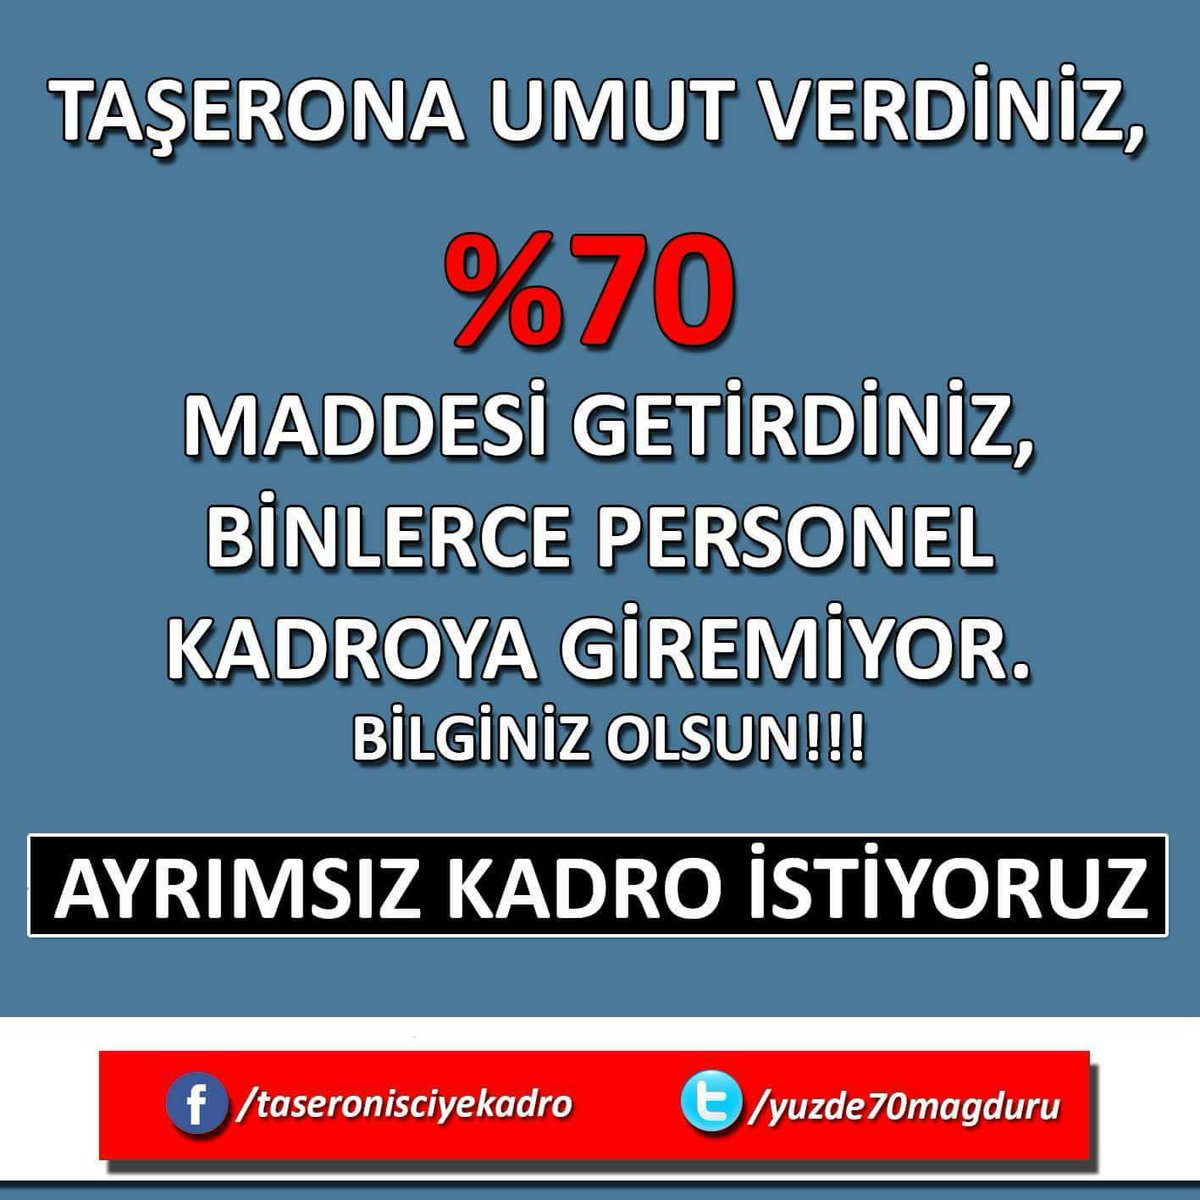 #Taserona1MayısdaSon TAŞERONA KÖKTEN ÇÖZÜM İSTİYORUZ TÜM TAŞERONLARA KADRO #yemekhanecilerekadro 
#Taserona1MayısdaSon
@RT_Erdogan
@BA_Yildirim
@jsarieroglu
@naci_agbal
@Dr_Demircan